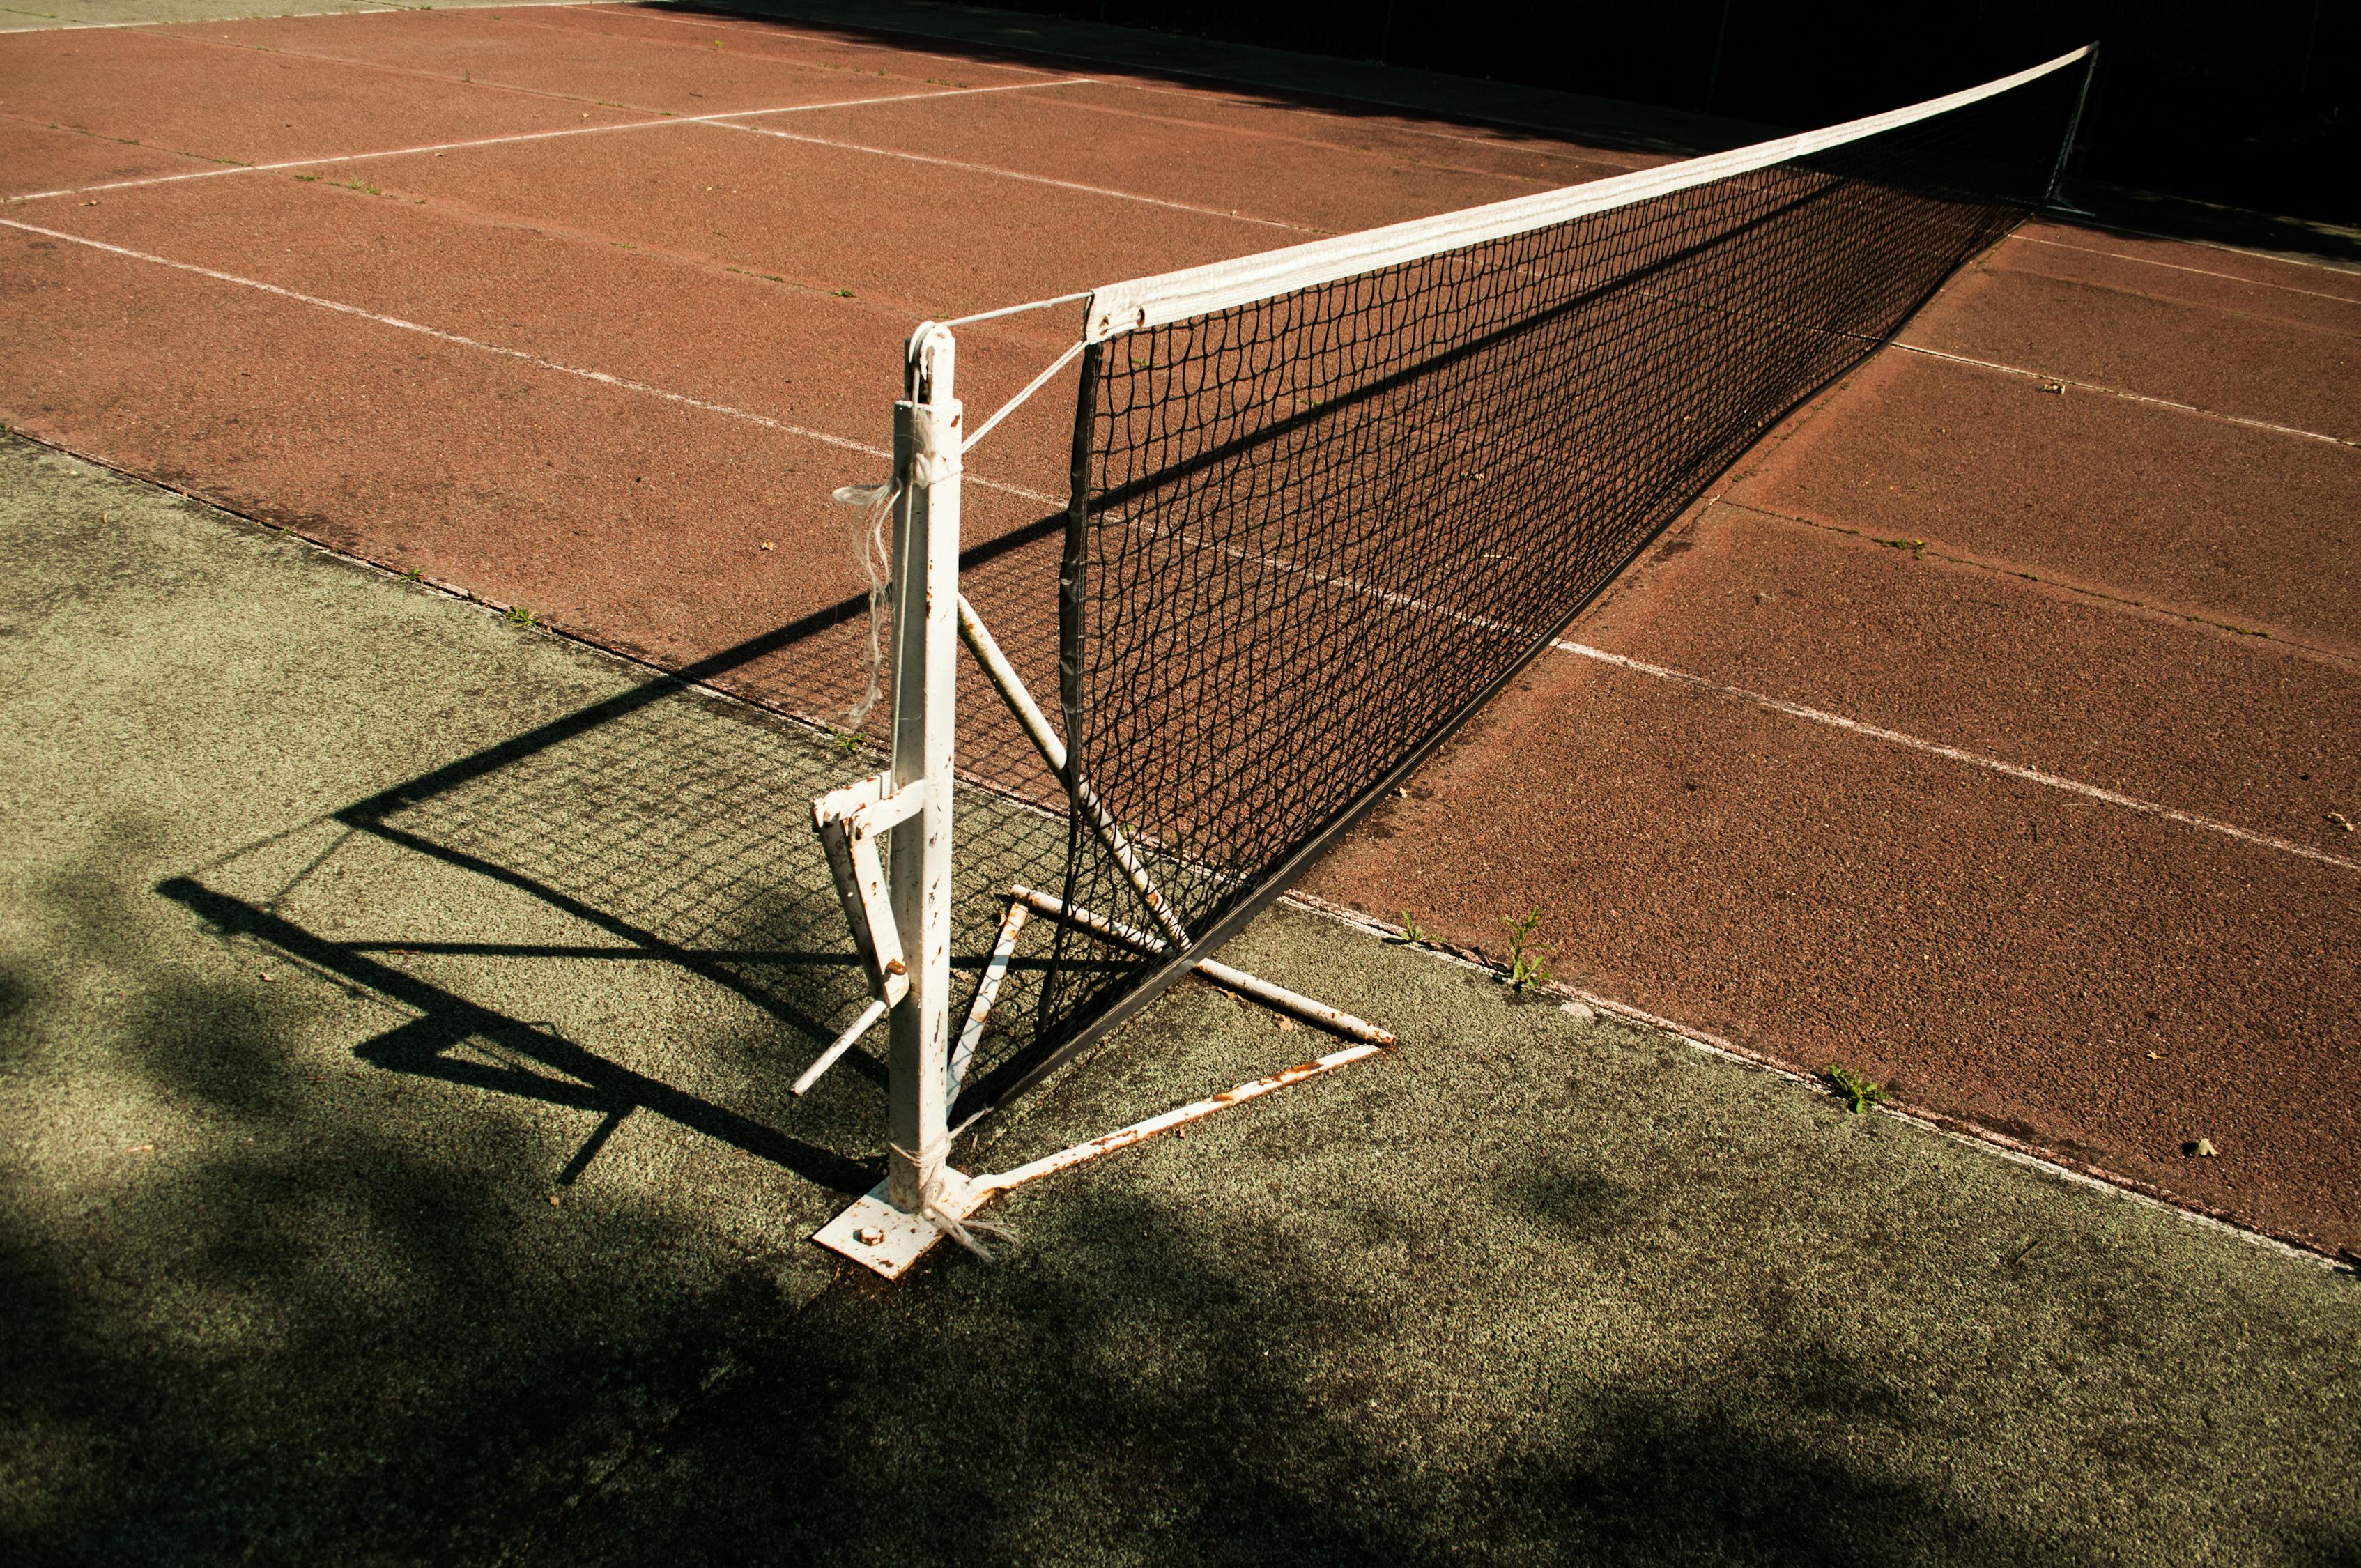 white-tennis-goal-free-stock-photo